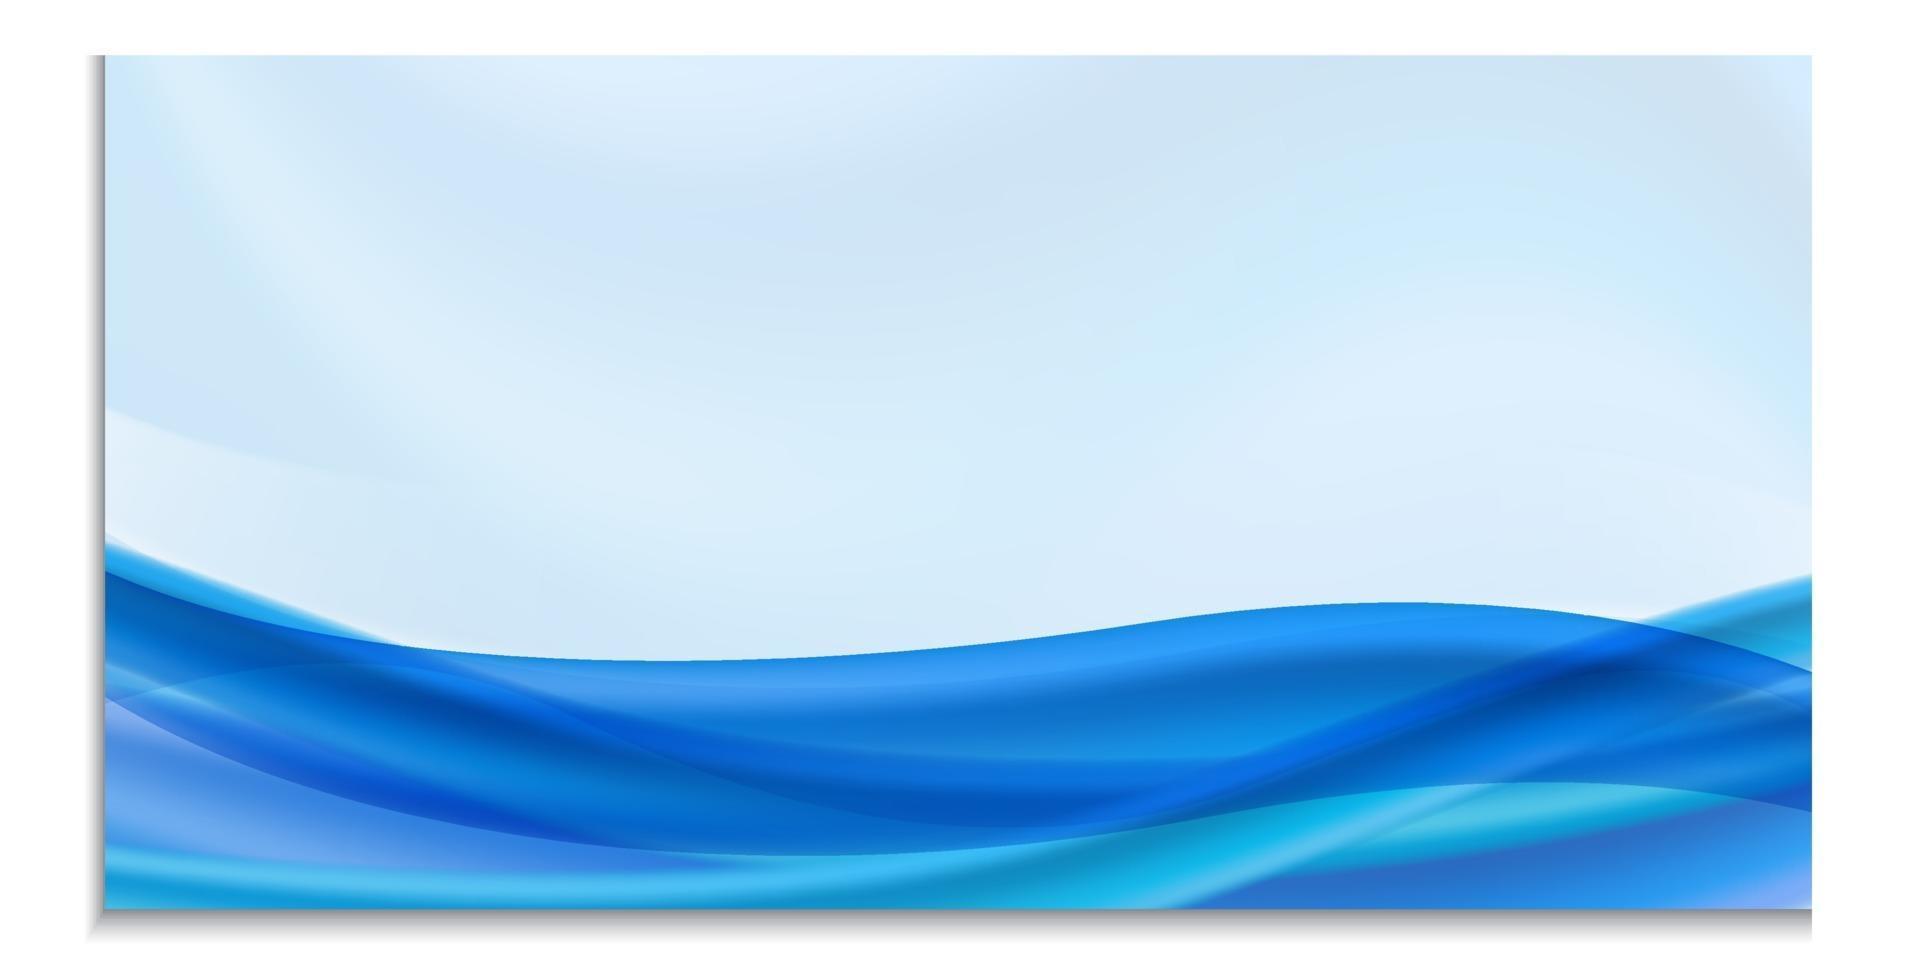 vector horizontale sjabloon voor ontwerp, flyer, uitnodiging, brochure, advertentie, banner. blanco met blauwe golf of stroom, heldere vloeiende vormen op blauwe achtergrond met plaats voor tekst